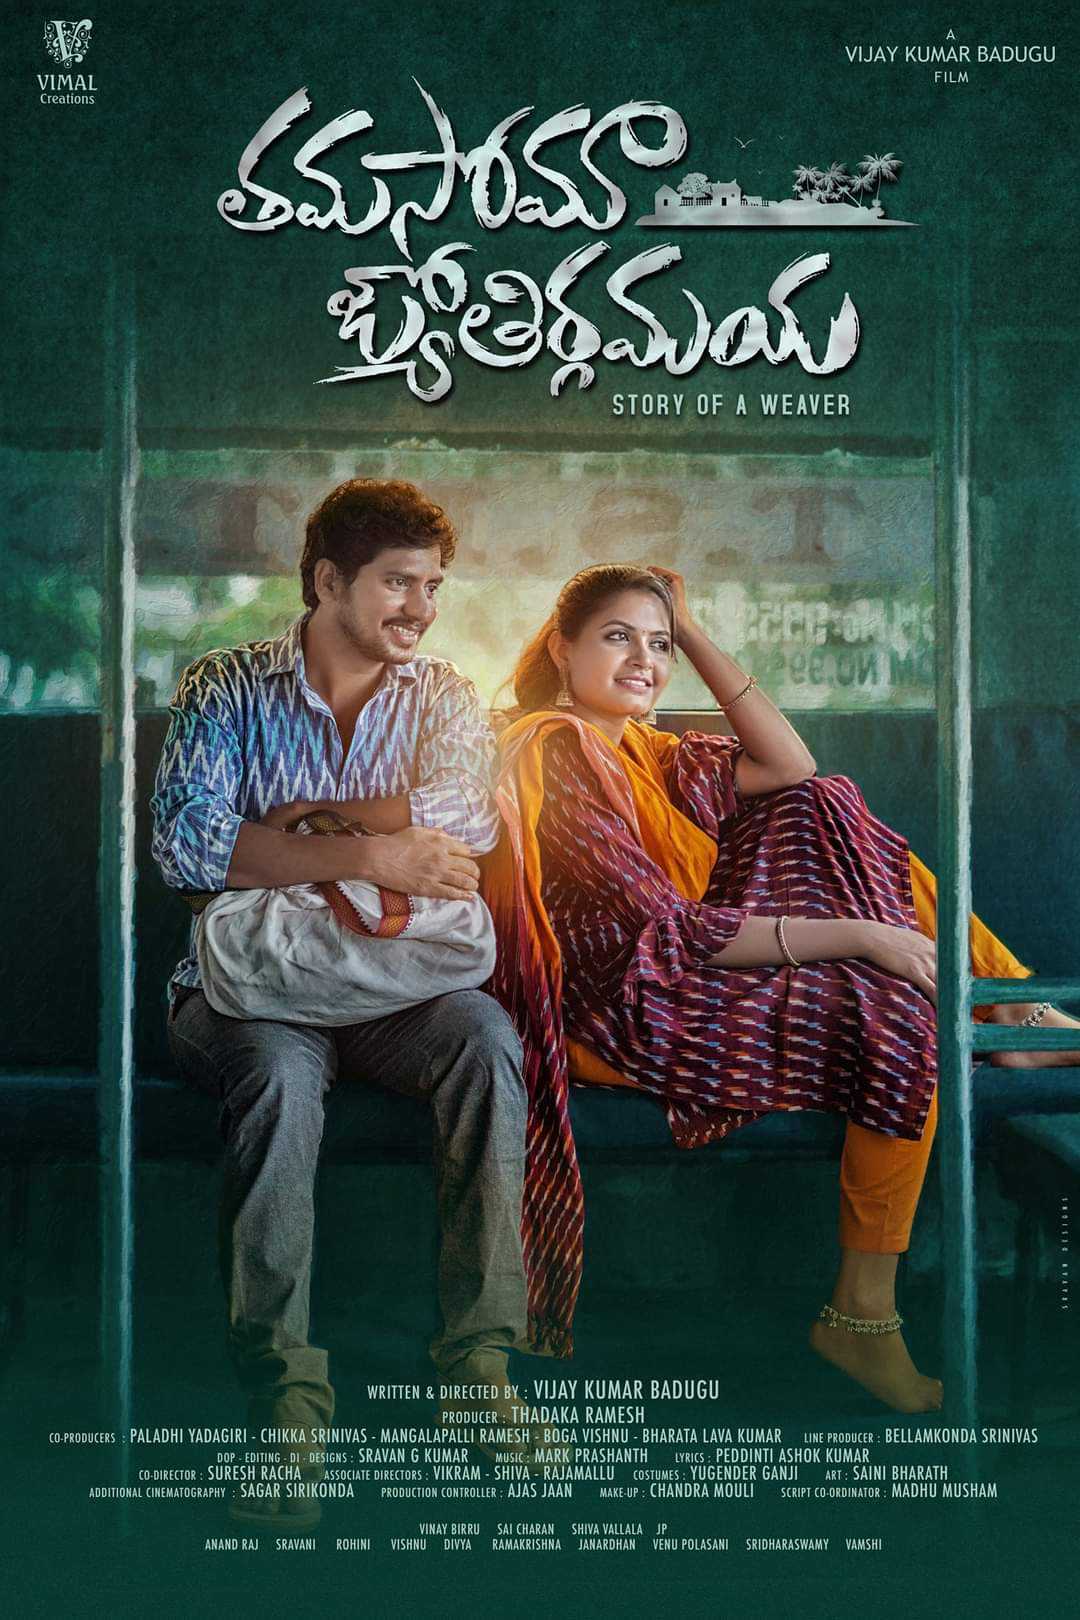 thamasoma jyothirgamaya movie poster released